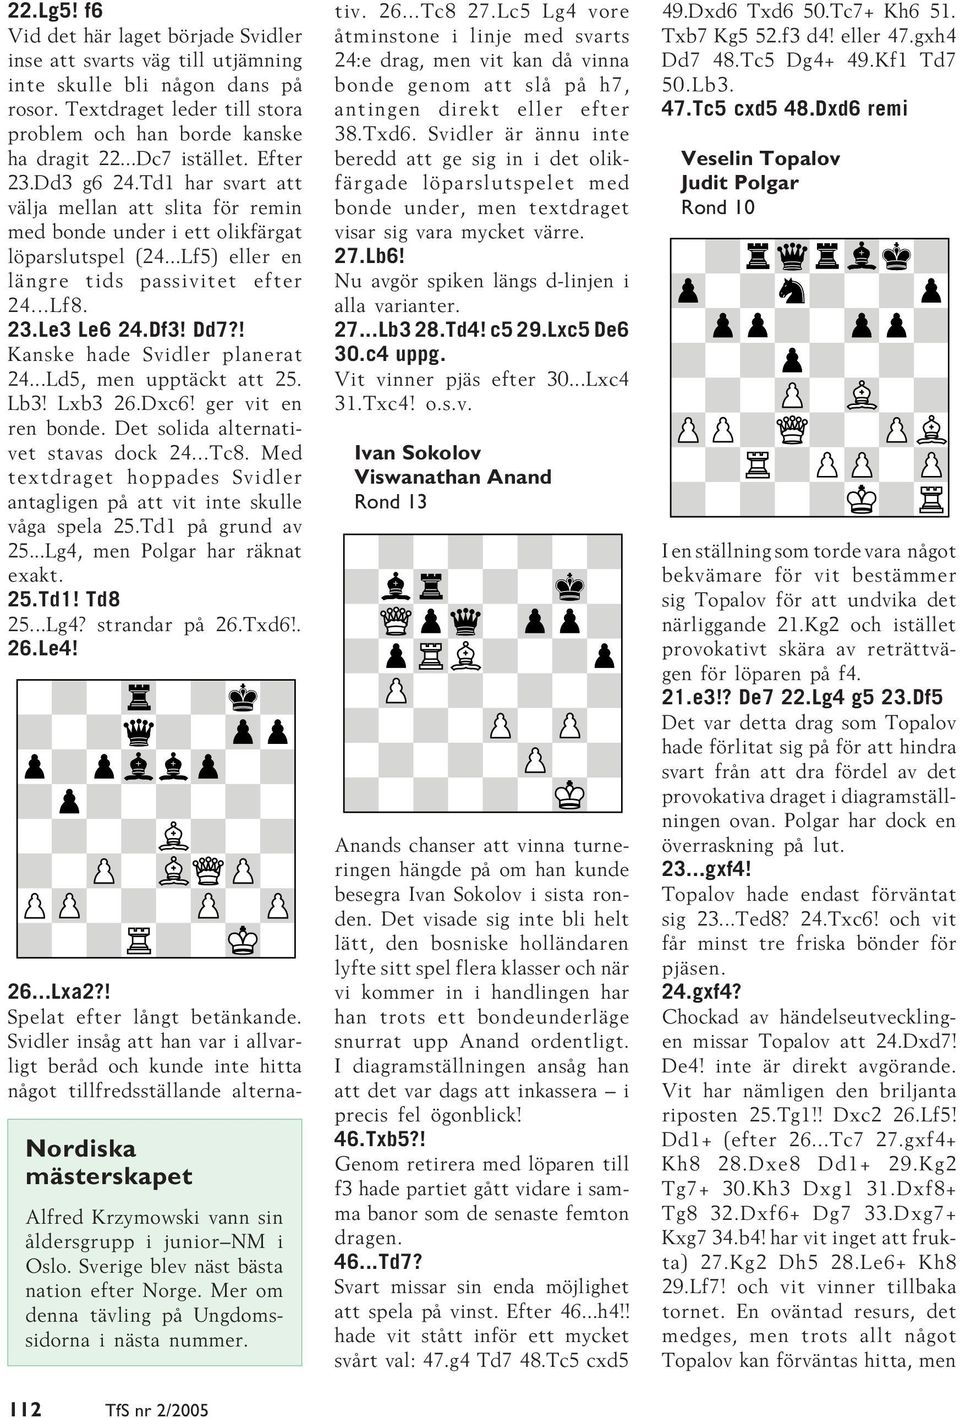 ! Kanske hade Svidler planerat 24...Ld5, men upptäckt att 25. Lb3! Lxb3 26.Dxc6! ger vit en ren bonde. Det solida alternativet stavas dock 24...Tc8.